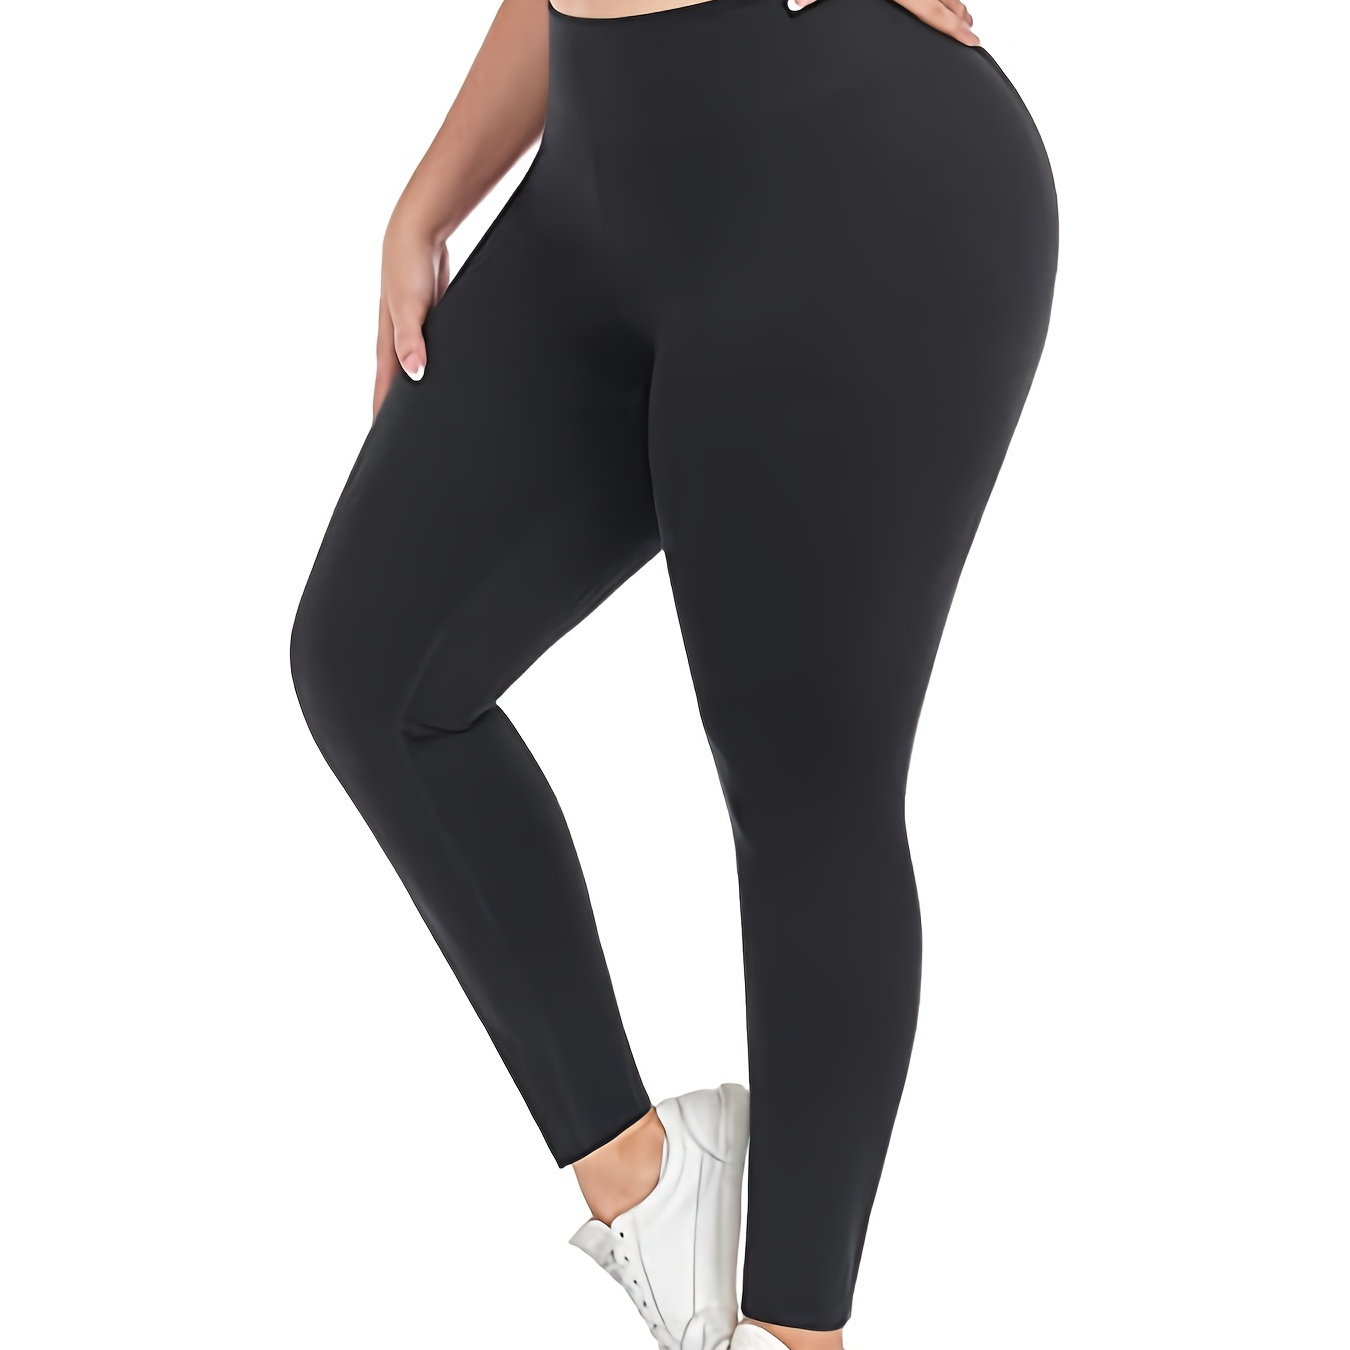 nsendm Unisex Pants Adult plus Size Yoga Pants for Women 5xl Women's Split  Exercise Stretch High Solid Pants Yoga Pants plus Size for Women(Black, L)